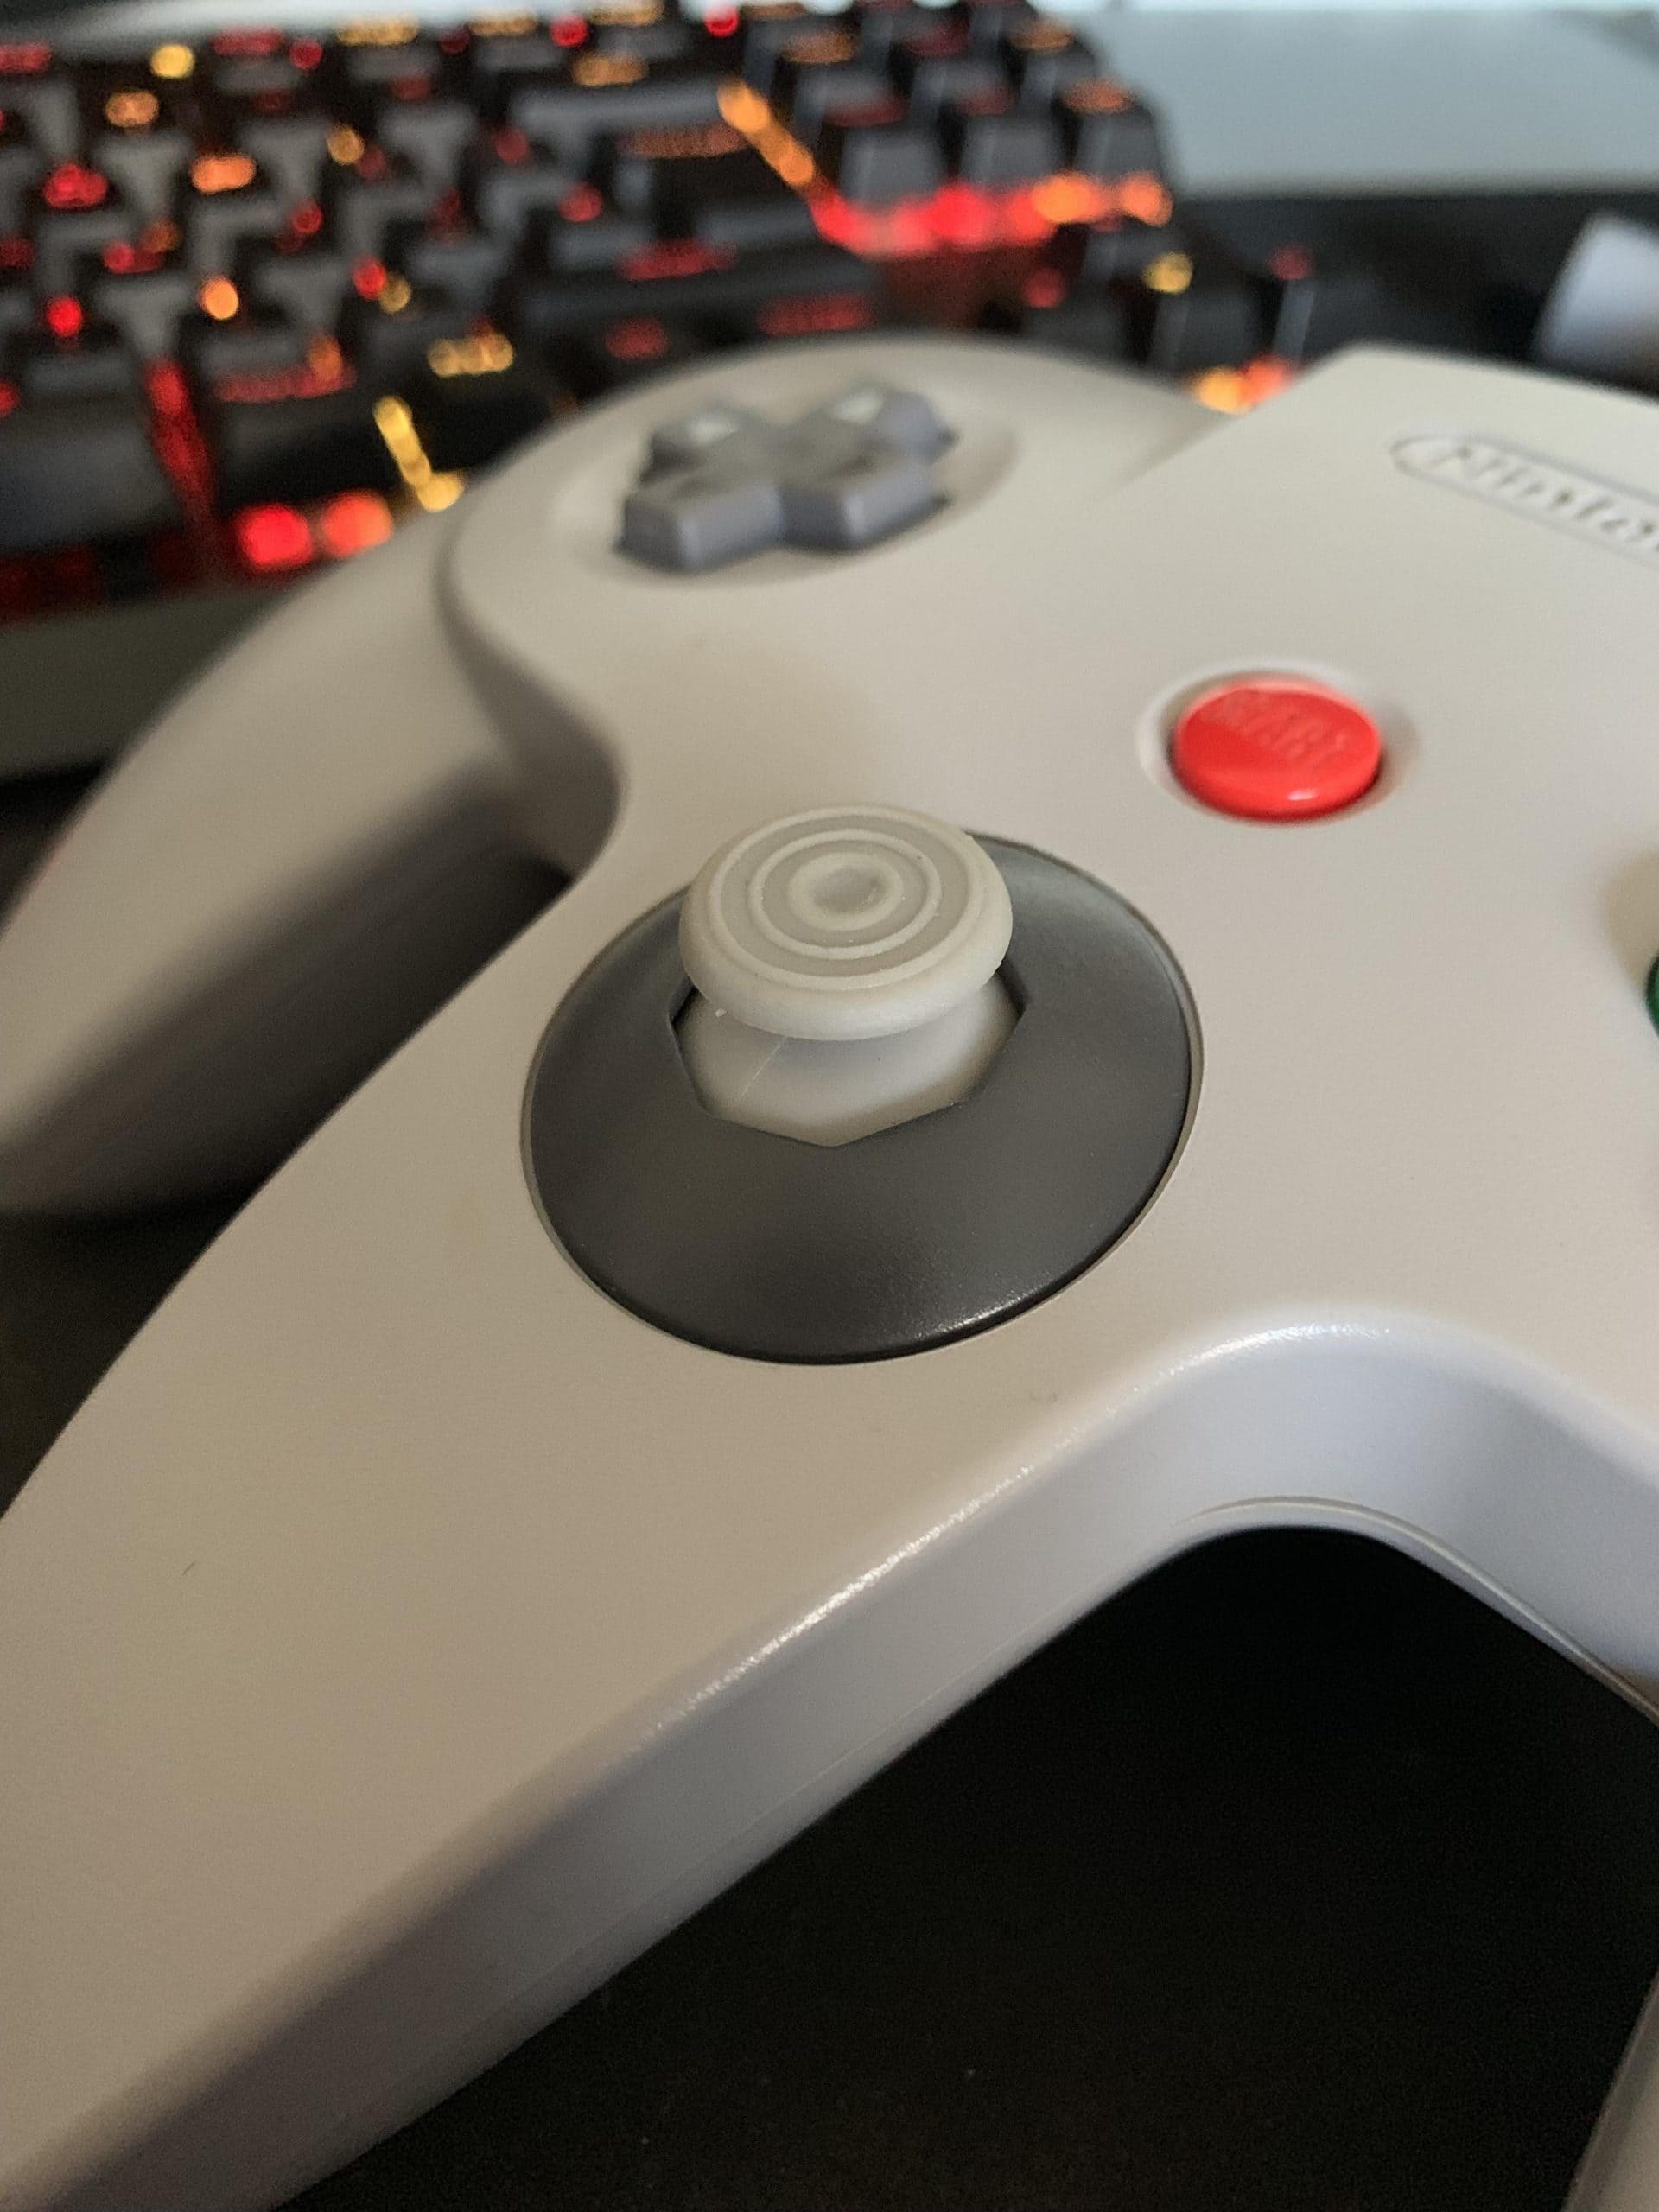 4 причины, по которым контроллер N64 является самым важным за все время